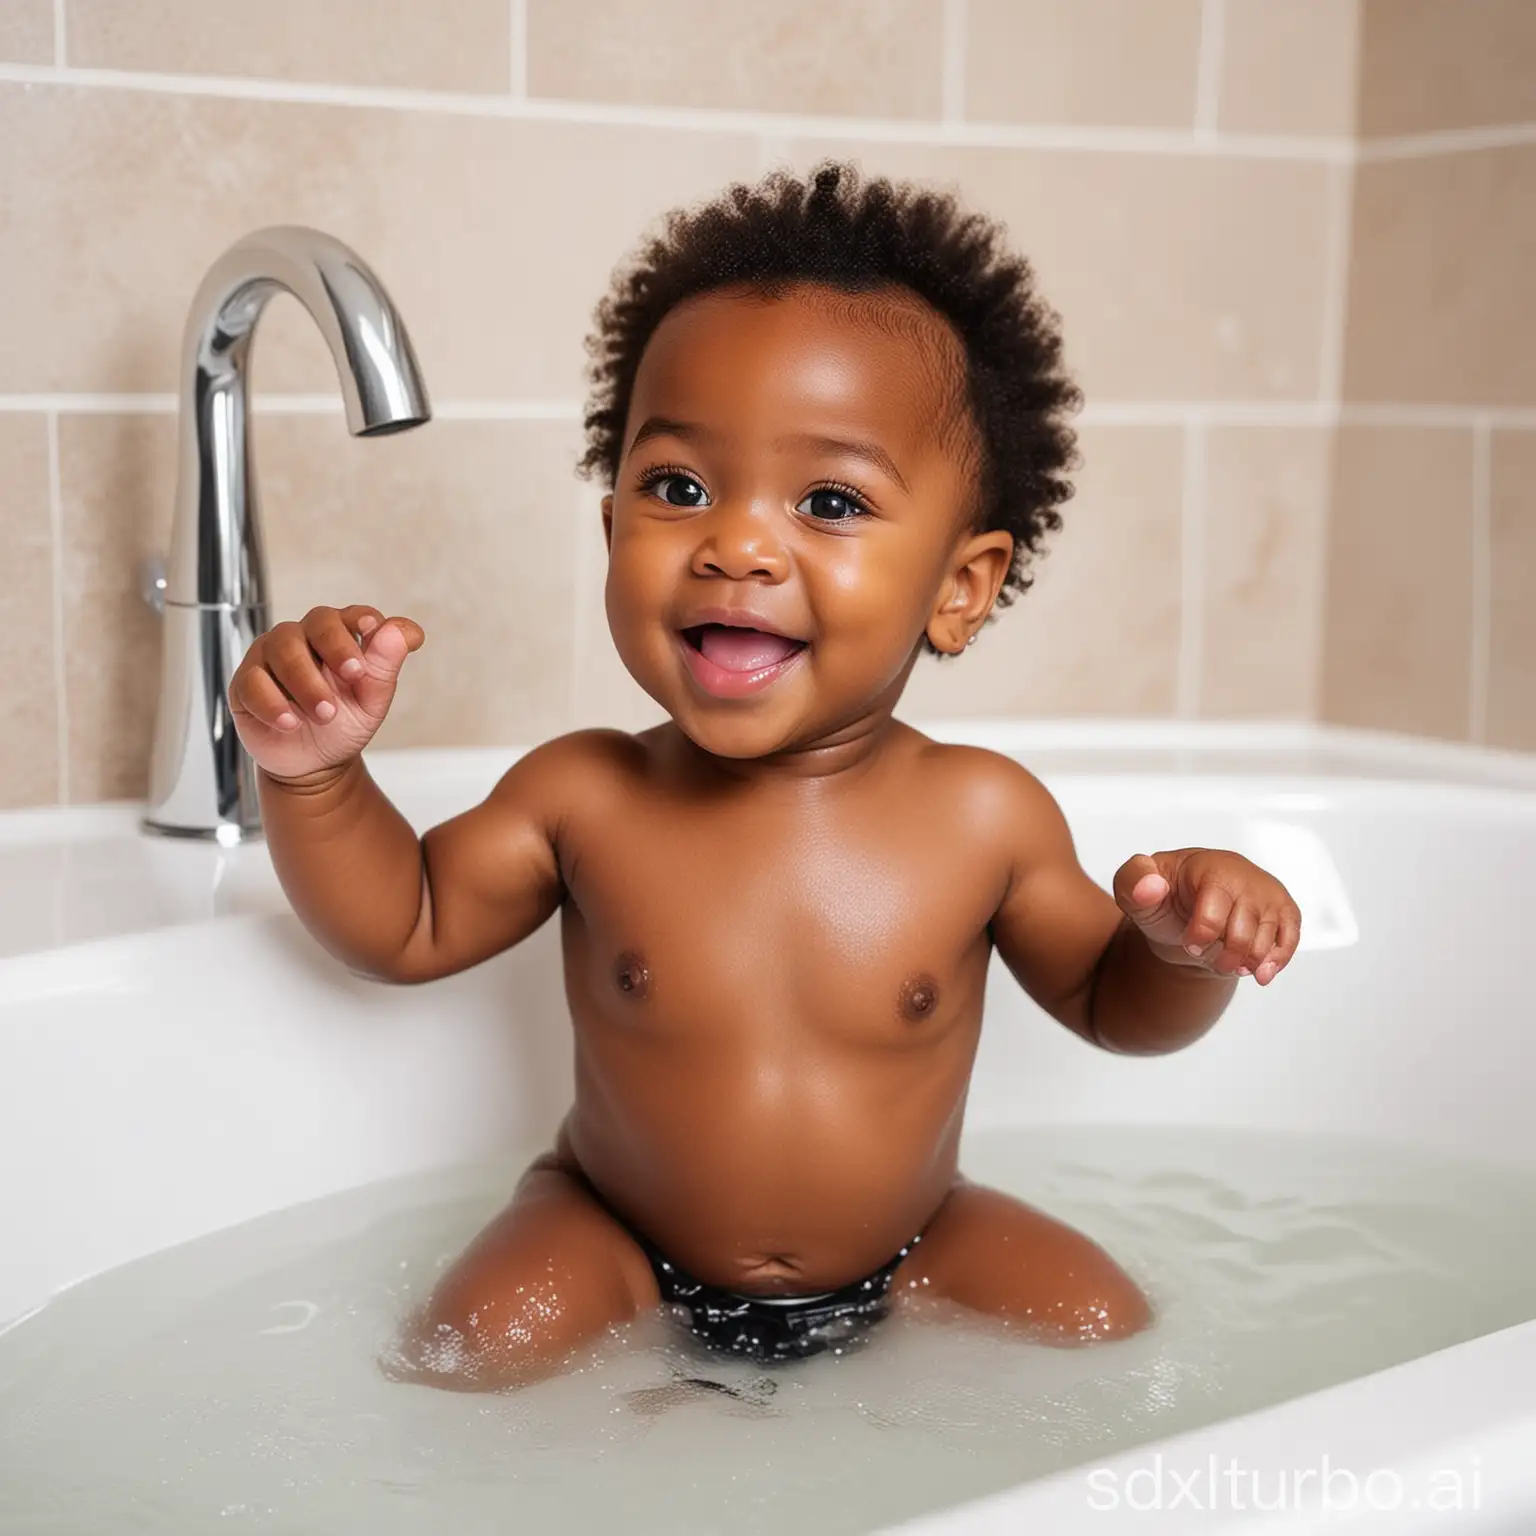 Adorable-Black-Baby-Enjoying-Bathtime-Fun